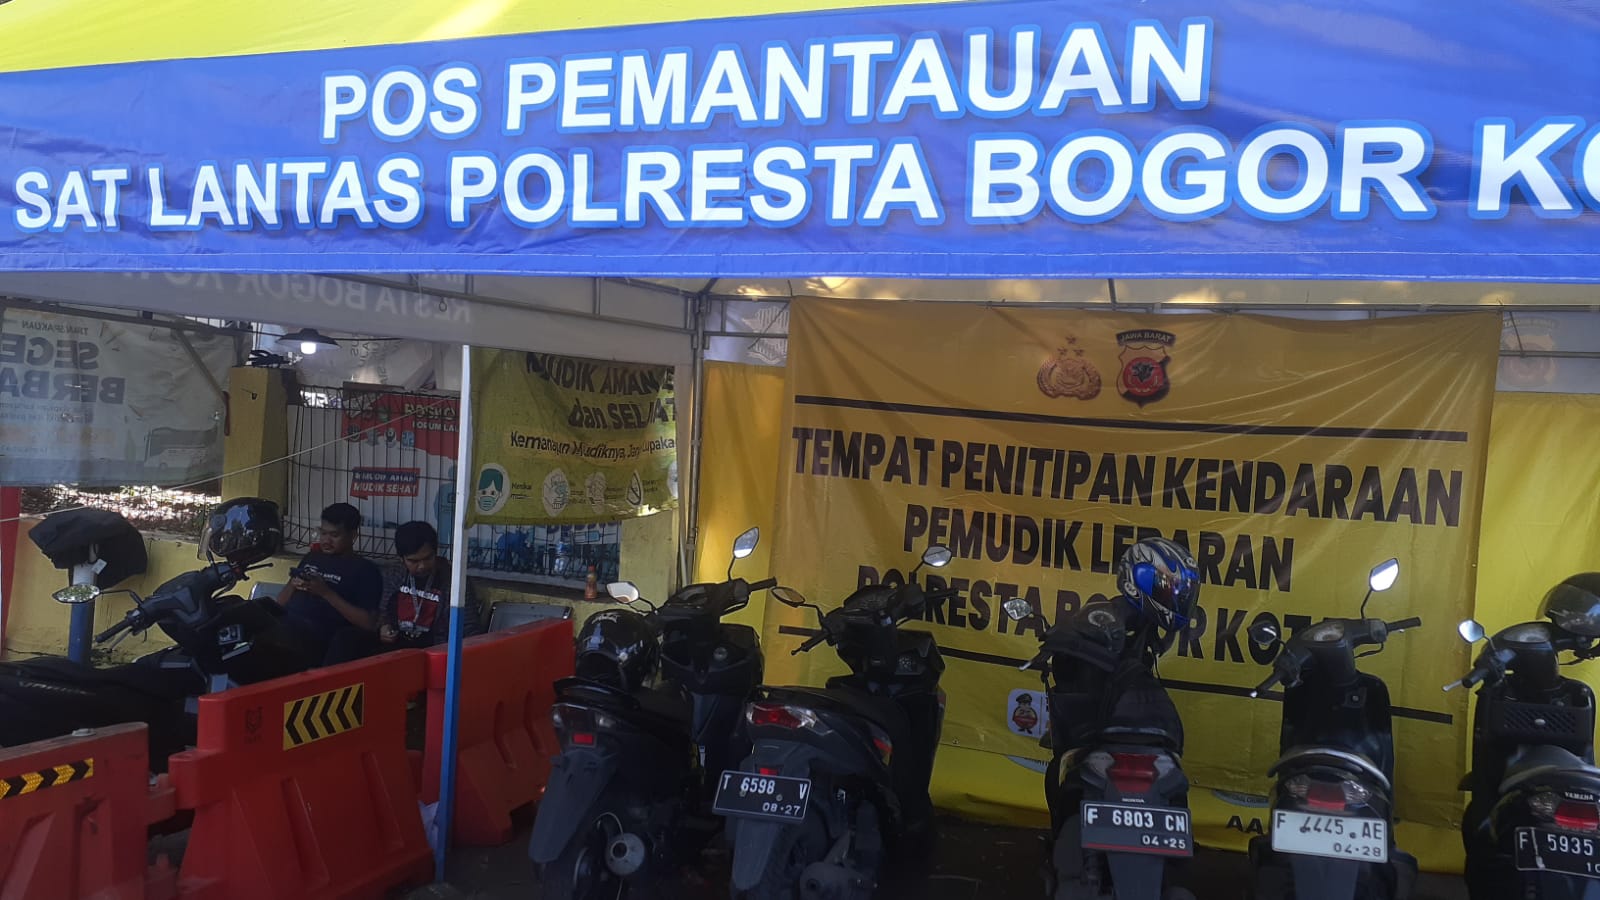 Satlantas Polresta Bogor Kota Buka Penitipan Kendaraan Pemudik Lebaran